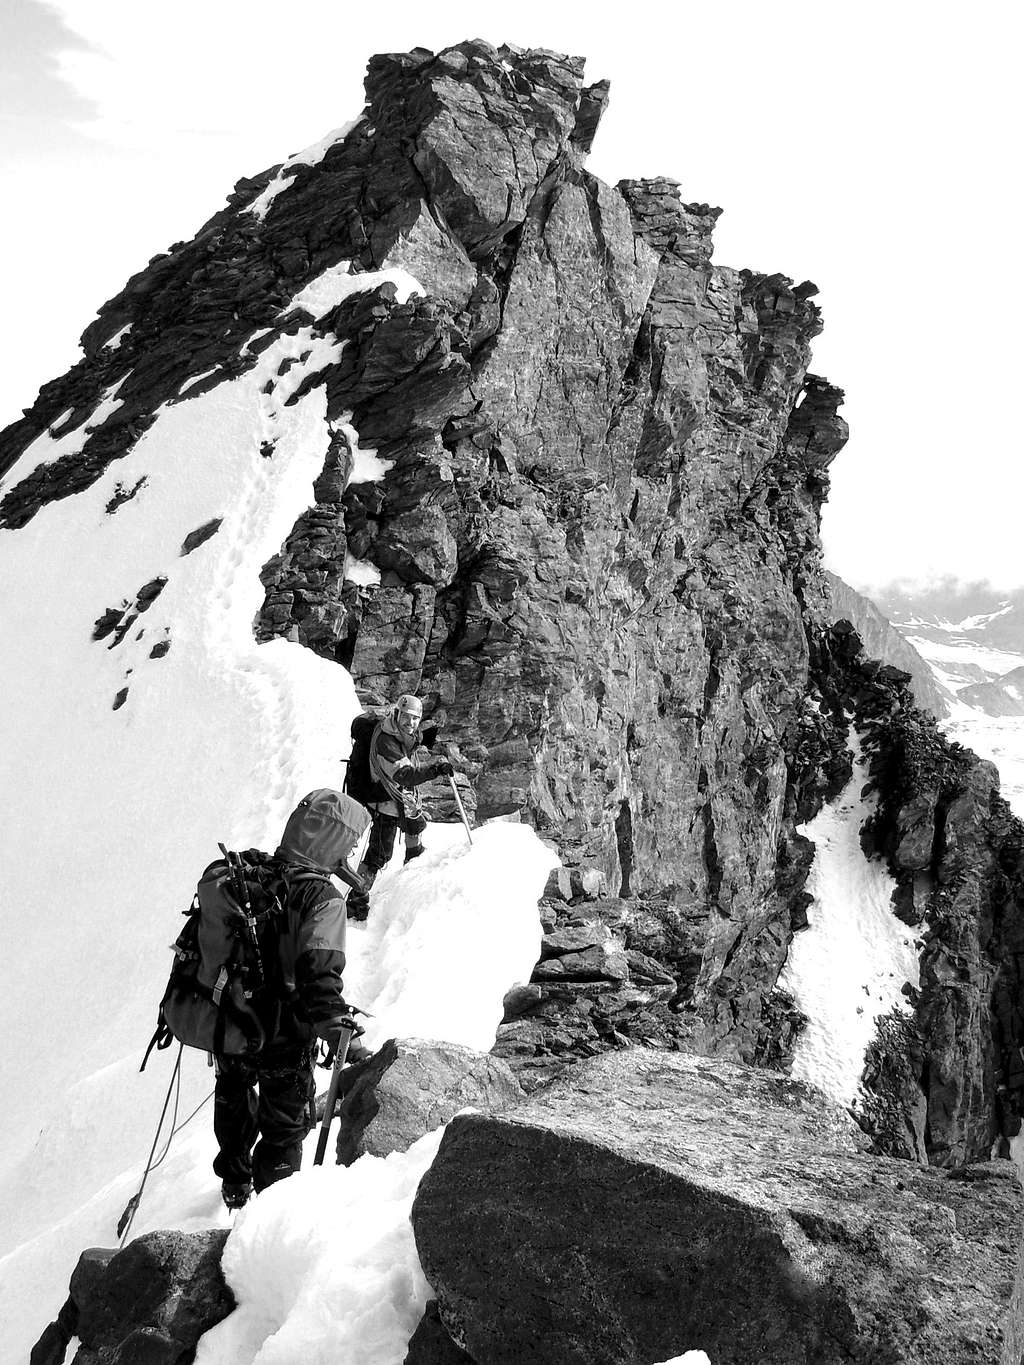 Airy ridge below Rimpfischhorn summit